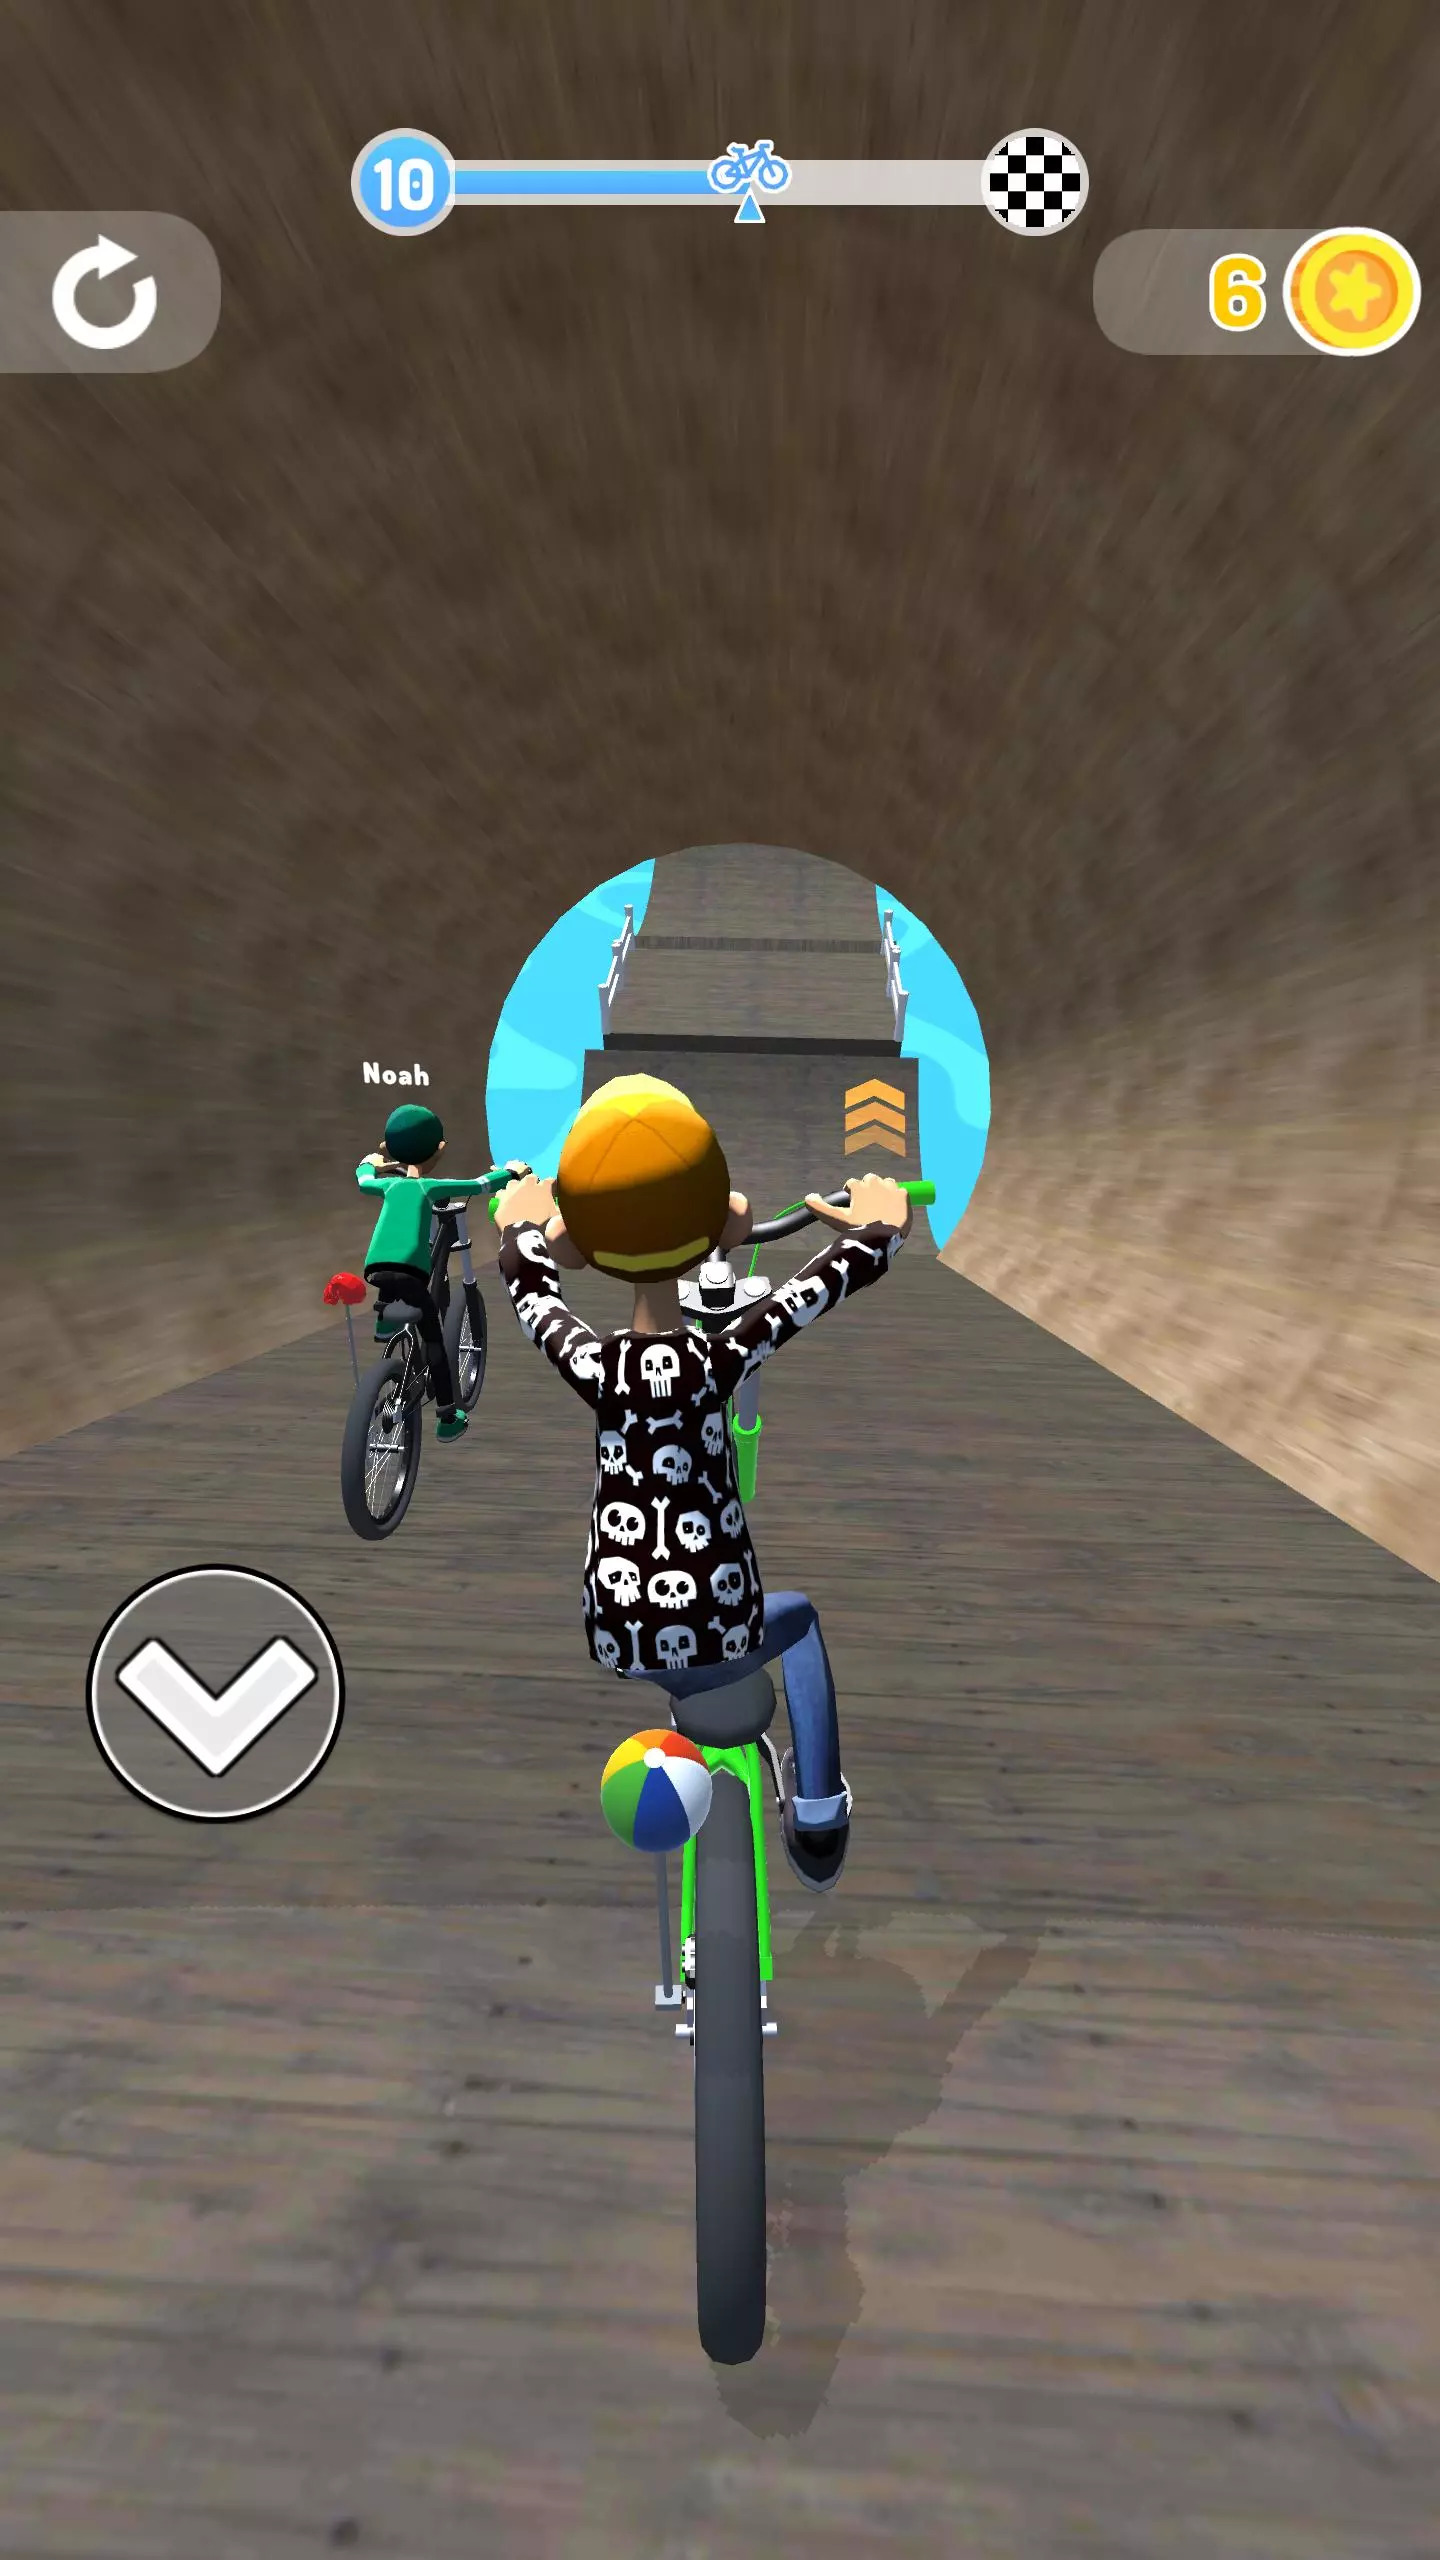 骑自行车的挑战3Dv29 安卓版